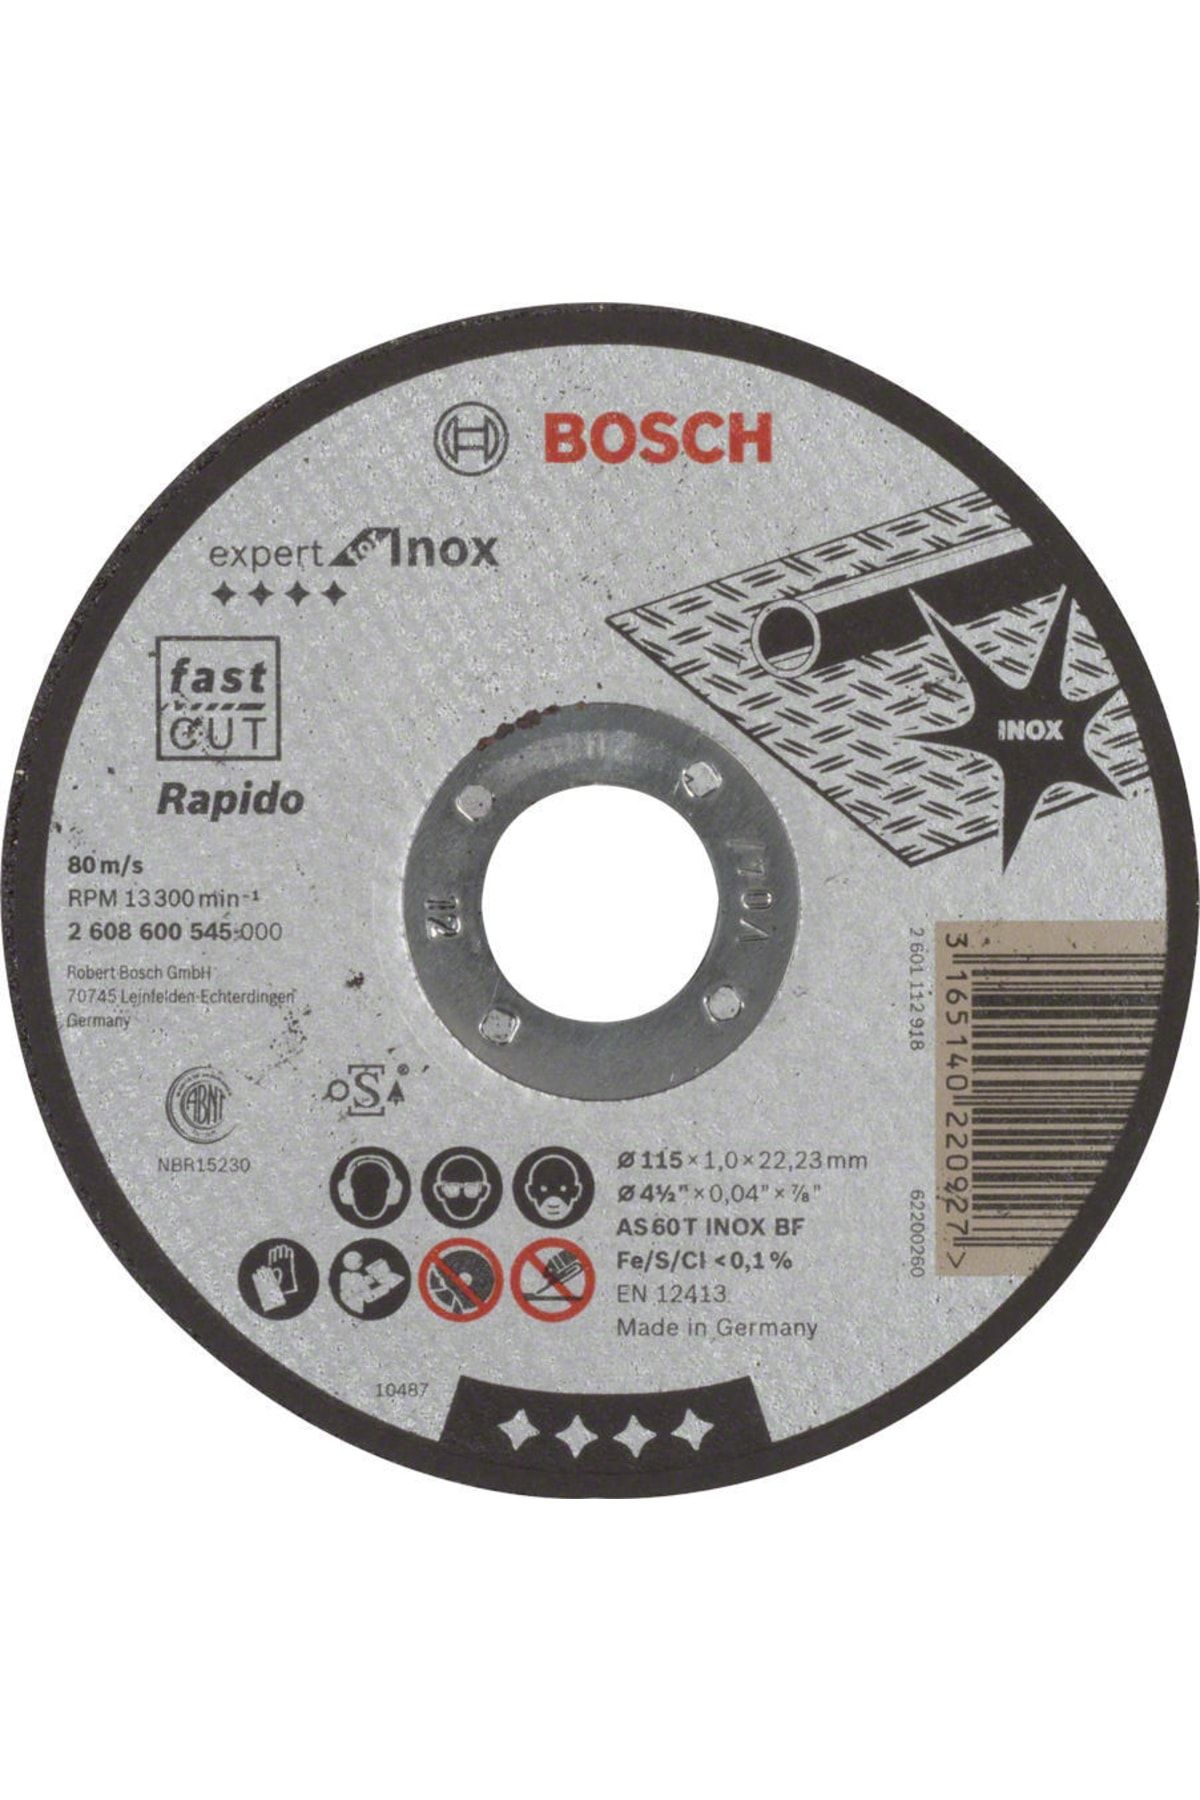 Bosch Expert For Inox Rapido 115*1,0 Mm Düz Kesme Diski - 2608600545